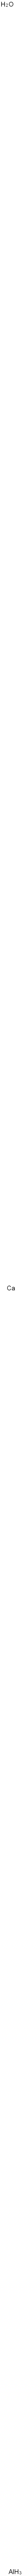 Aluminum calcium oxide  Structure